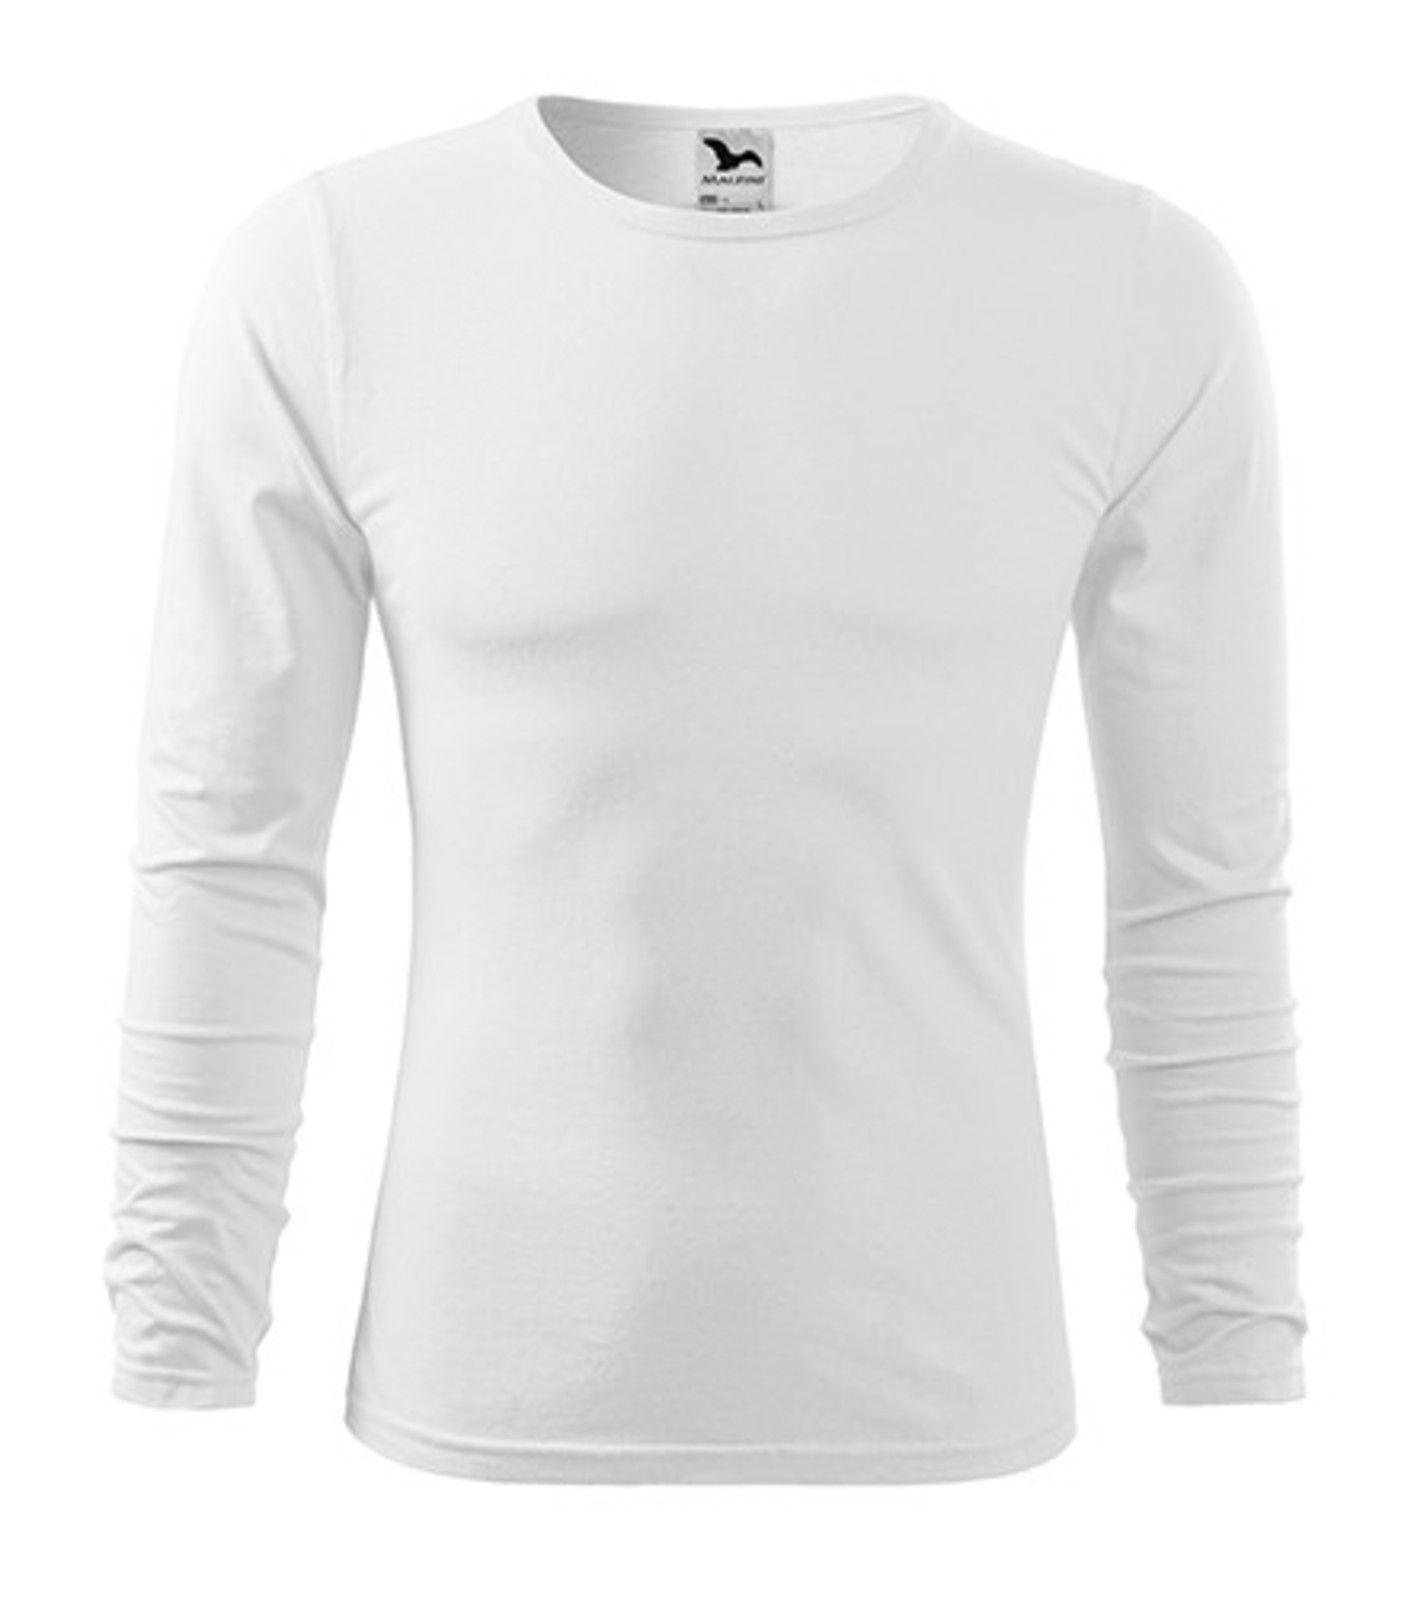 Pánske bavlnené tričko s dlhým rukávom Malfini Fit-T 119 - veľkosť: XL, farba: biela